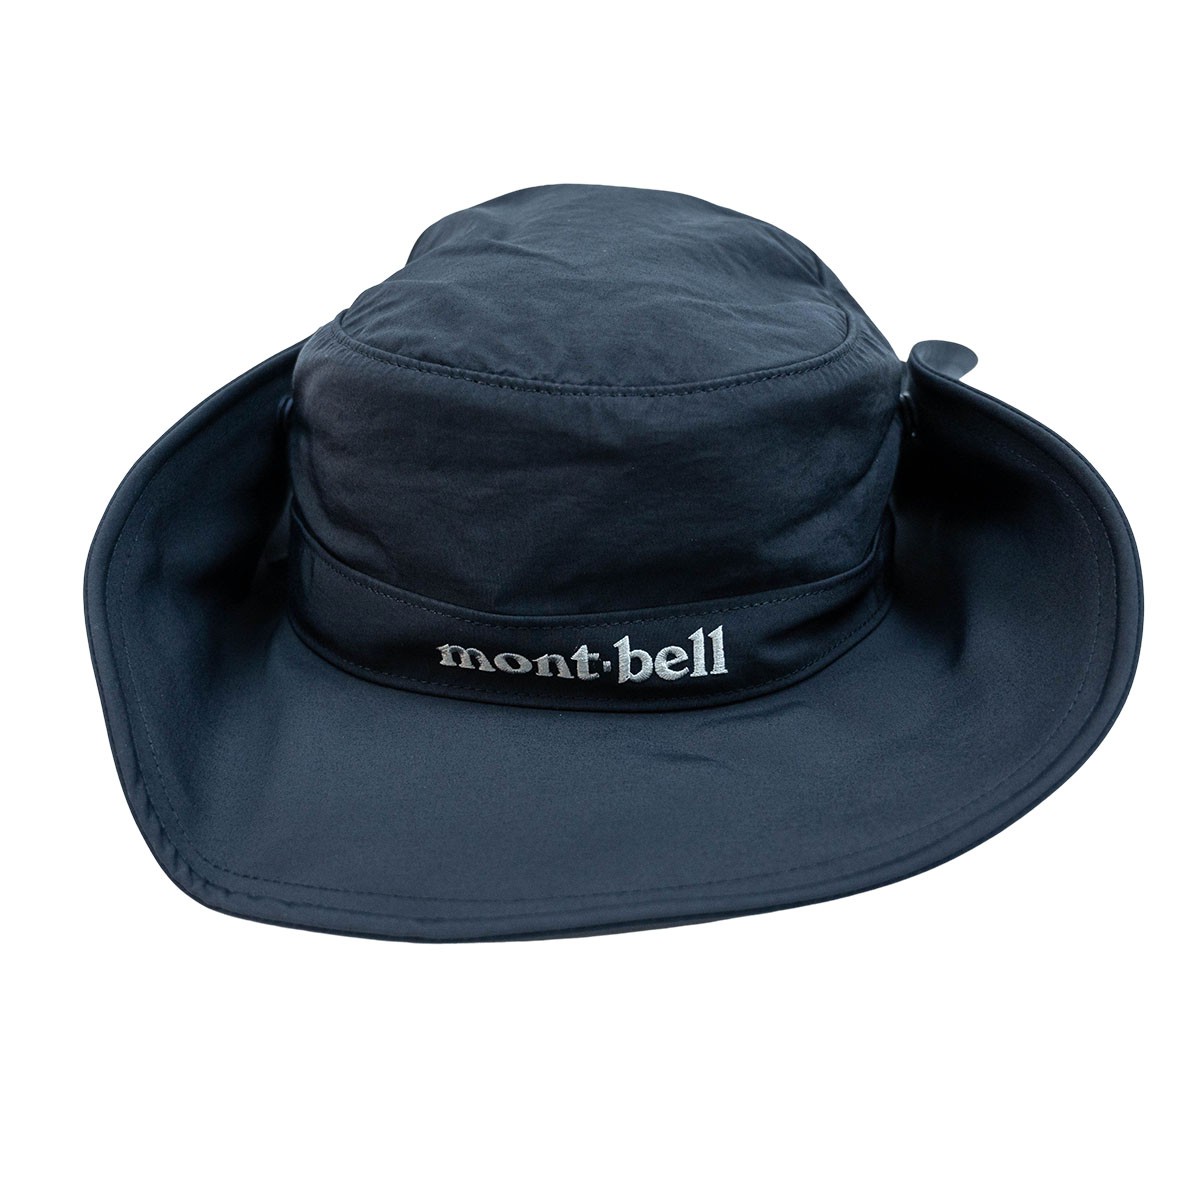 Mont-bell Wide Brim Hat 闊邊帽 黑色 Black 香港行貨 現貨